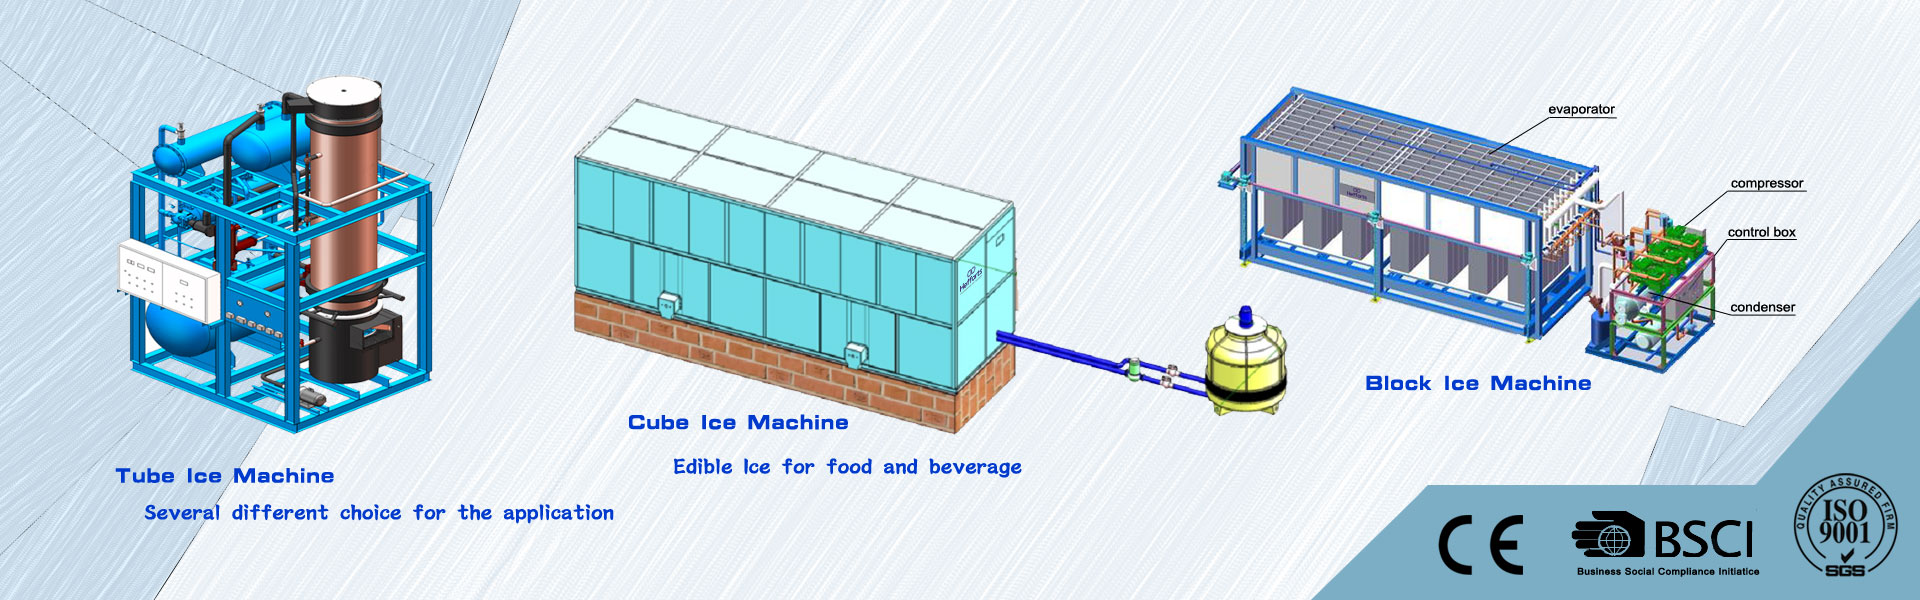 máquina de gelo, máquina de fazer gelo, câmara fria,Guangzhou Hefforts Refrigeration Equipment Co.,Ltd.